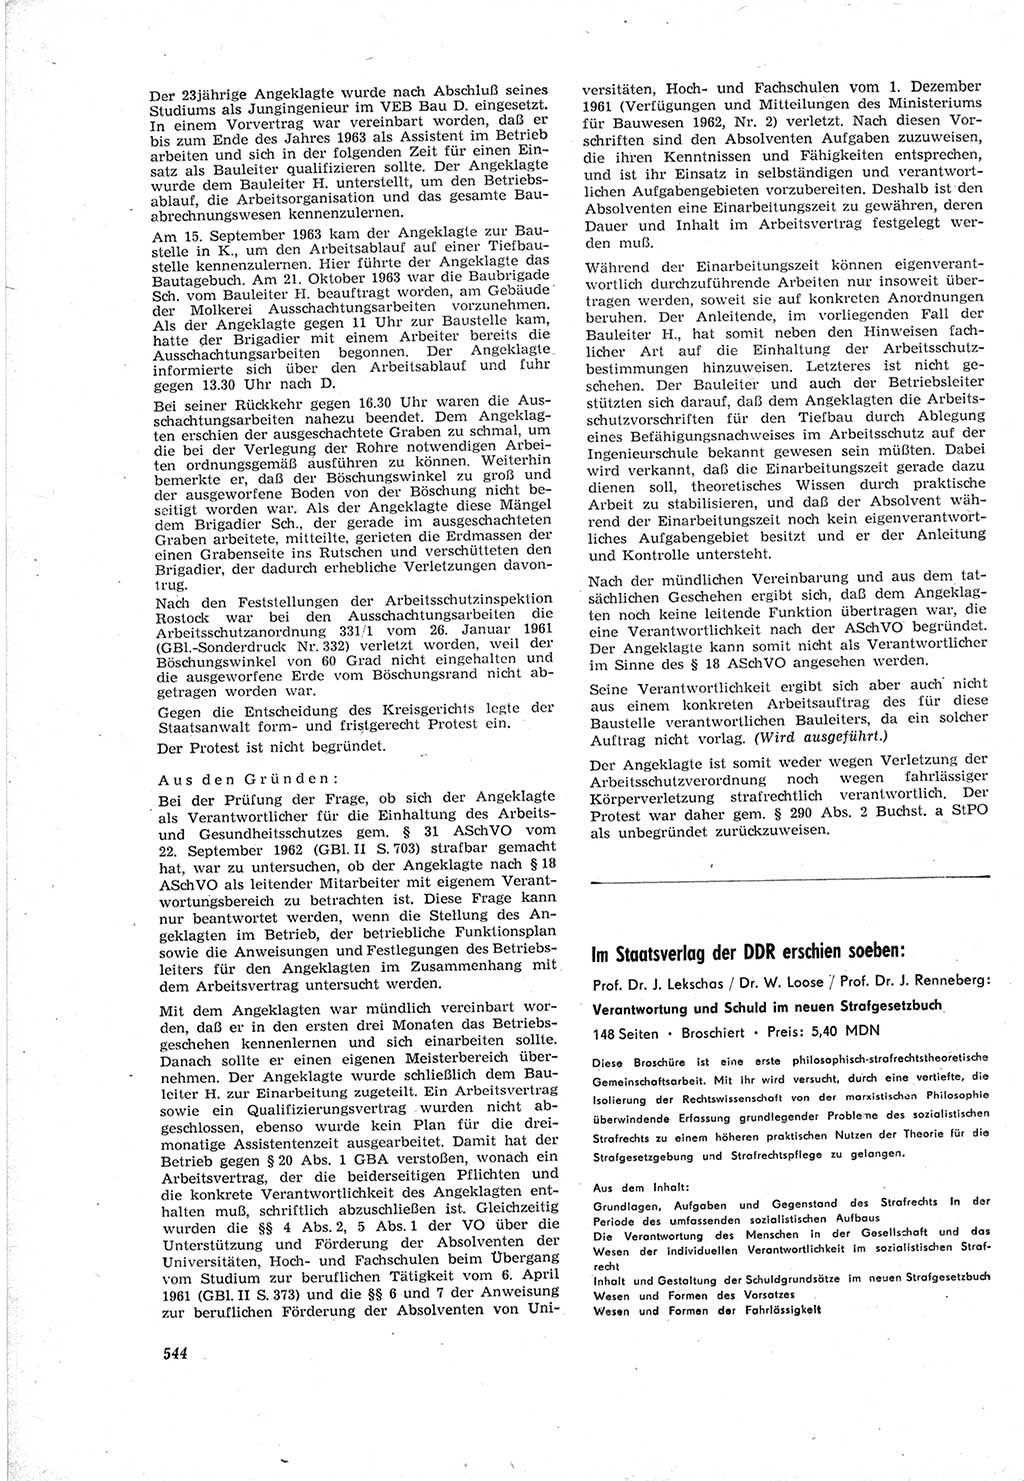 Neue Justiz (NJ), Zeitschrift für Recht und Rechtswissenschaft [Deutsche Demokratische Republik (DDR)], 18. Jahrgang 1964, Seite 544 (NJ DDR 1964, S. 544)